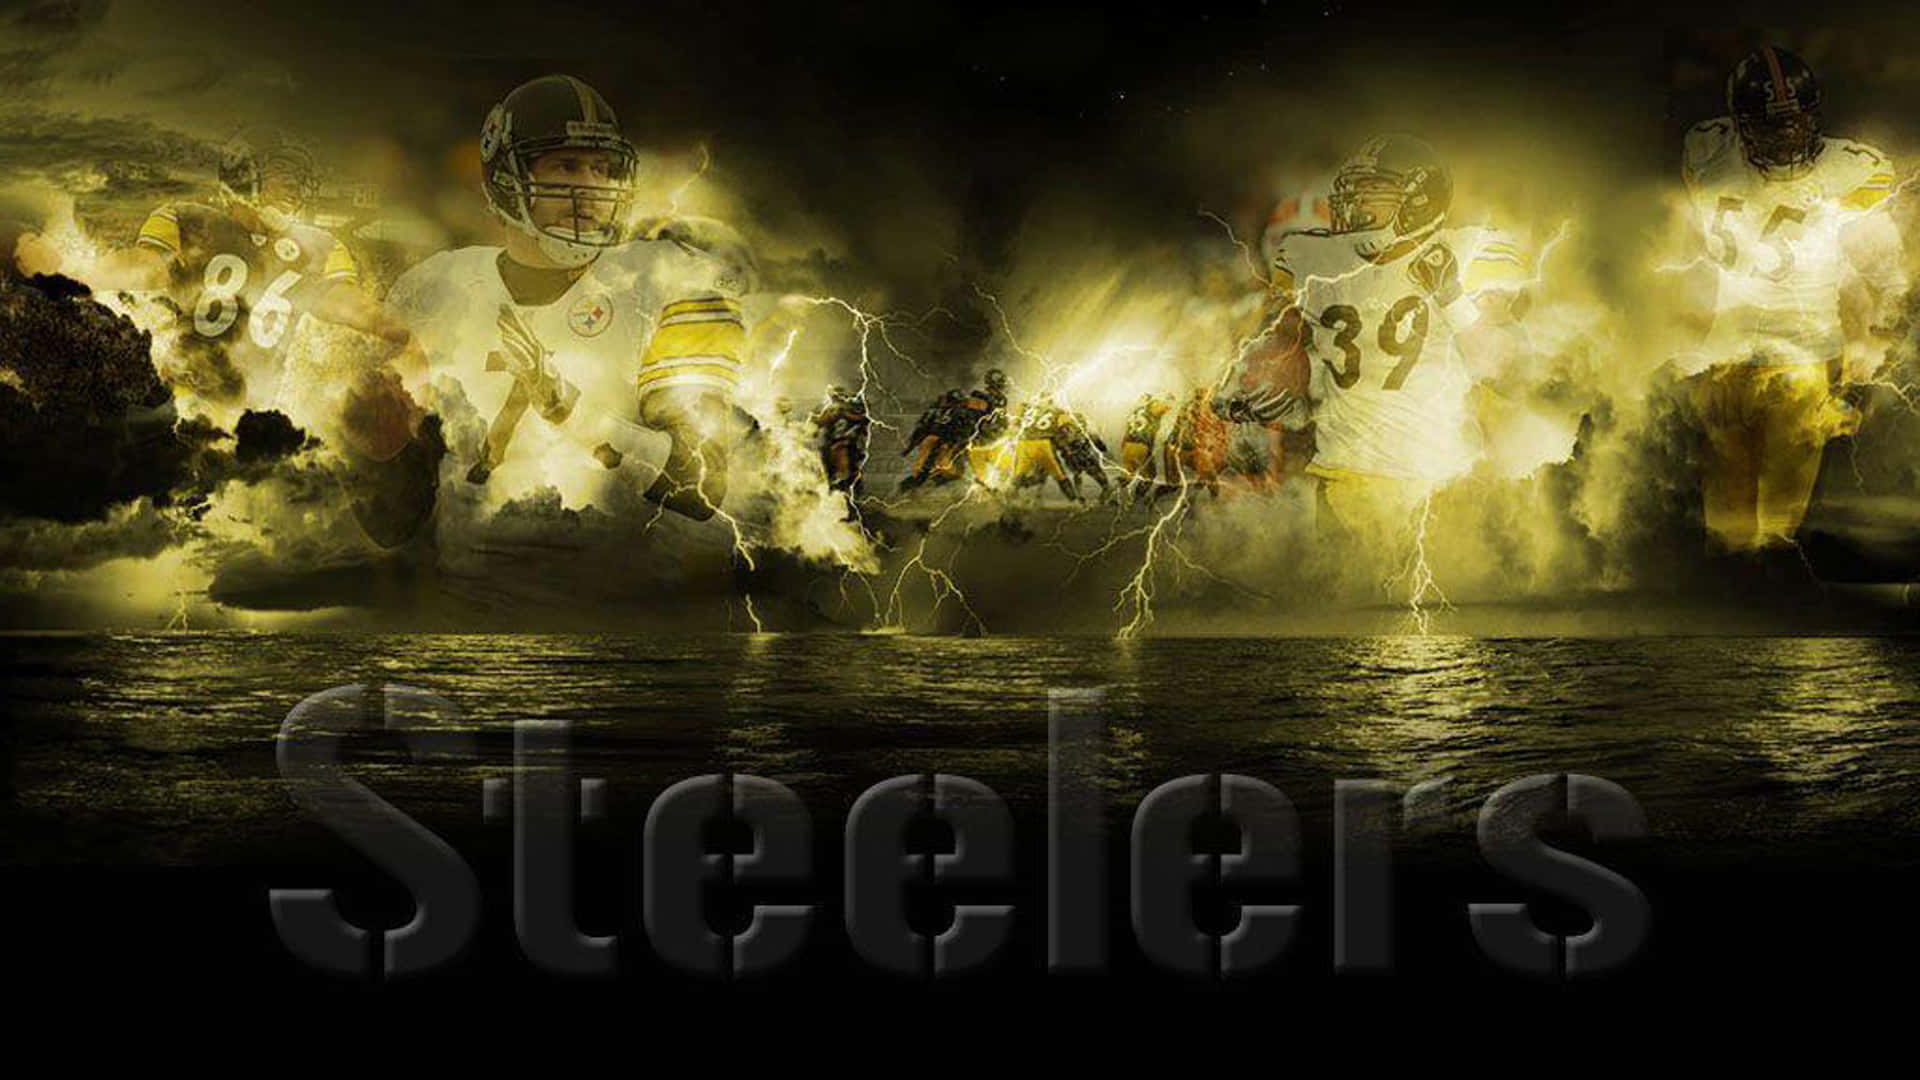 Bliladdad Med Den Officiellt Licensierade Maskotlogotypen För Pittsburgh Steelers! Wallpaper